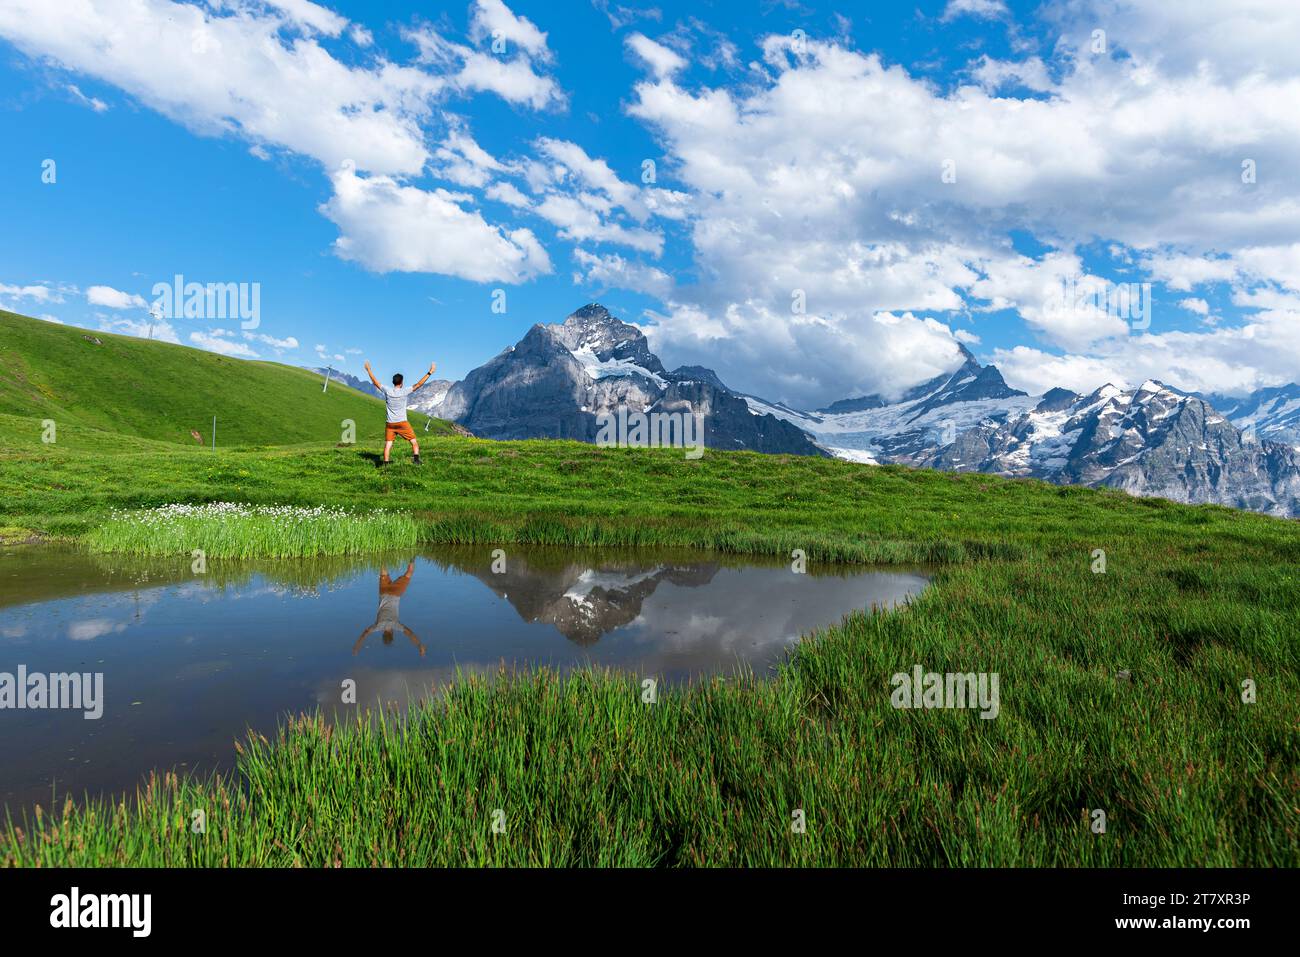 Felice escursionista che si riflette nelle acque di un piccolo lago sotto le montagne dell'Oberland Bernese, Bachalpsee, Grindelwald, Berna cantone, Svizzera, Europa Foto Stock